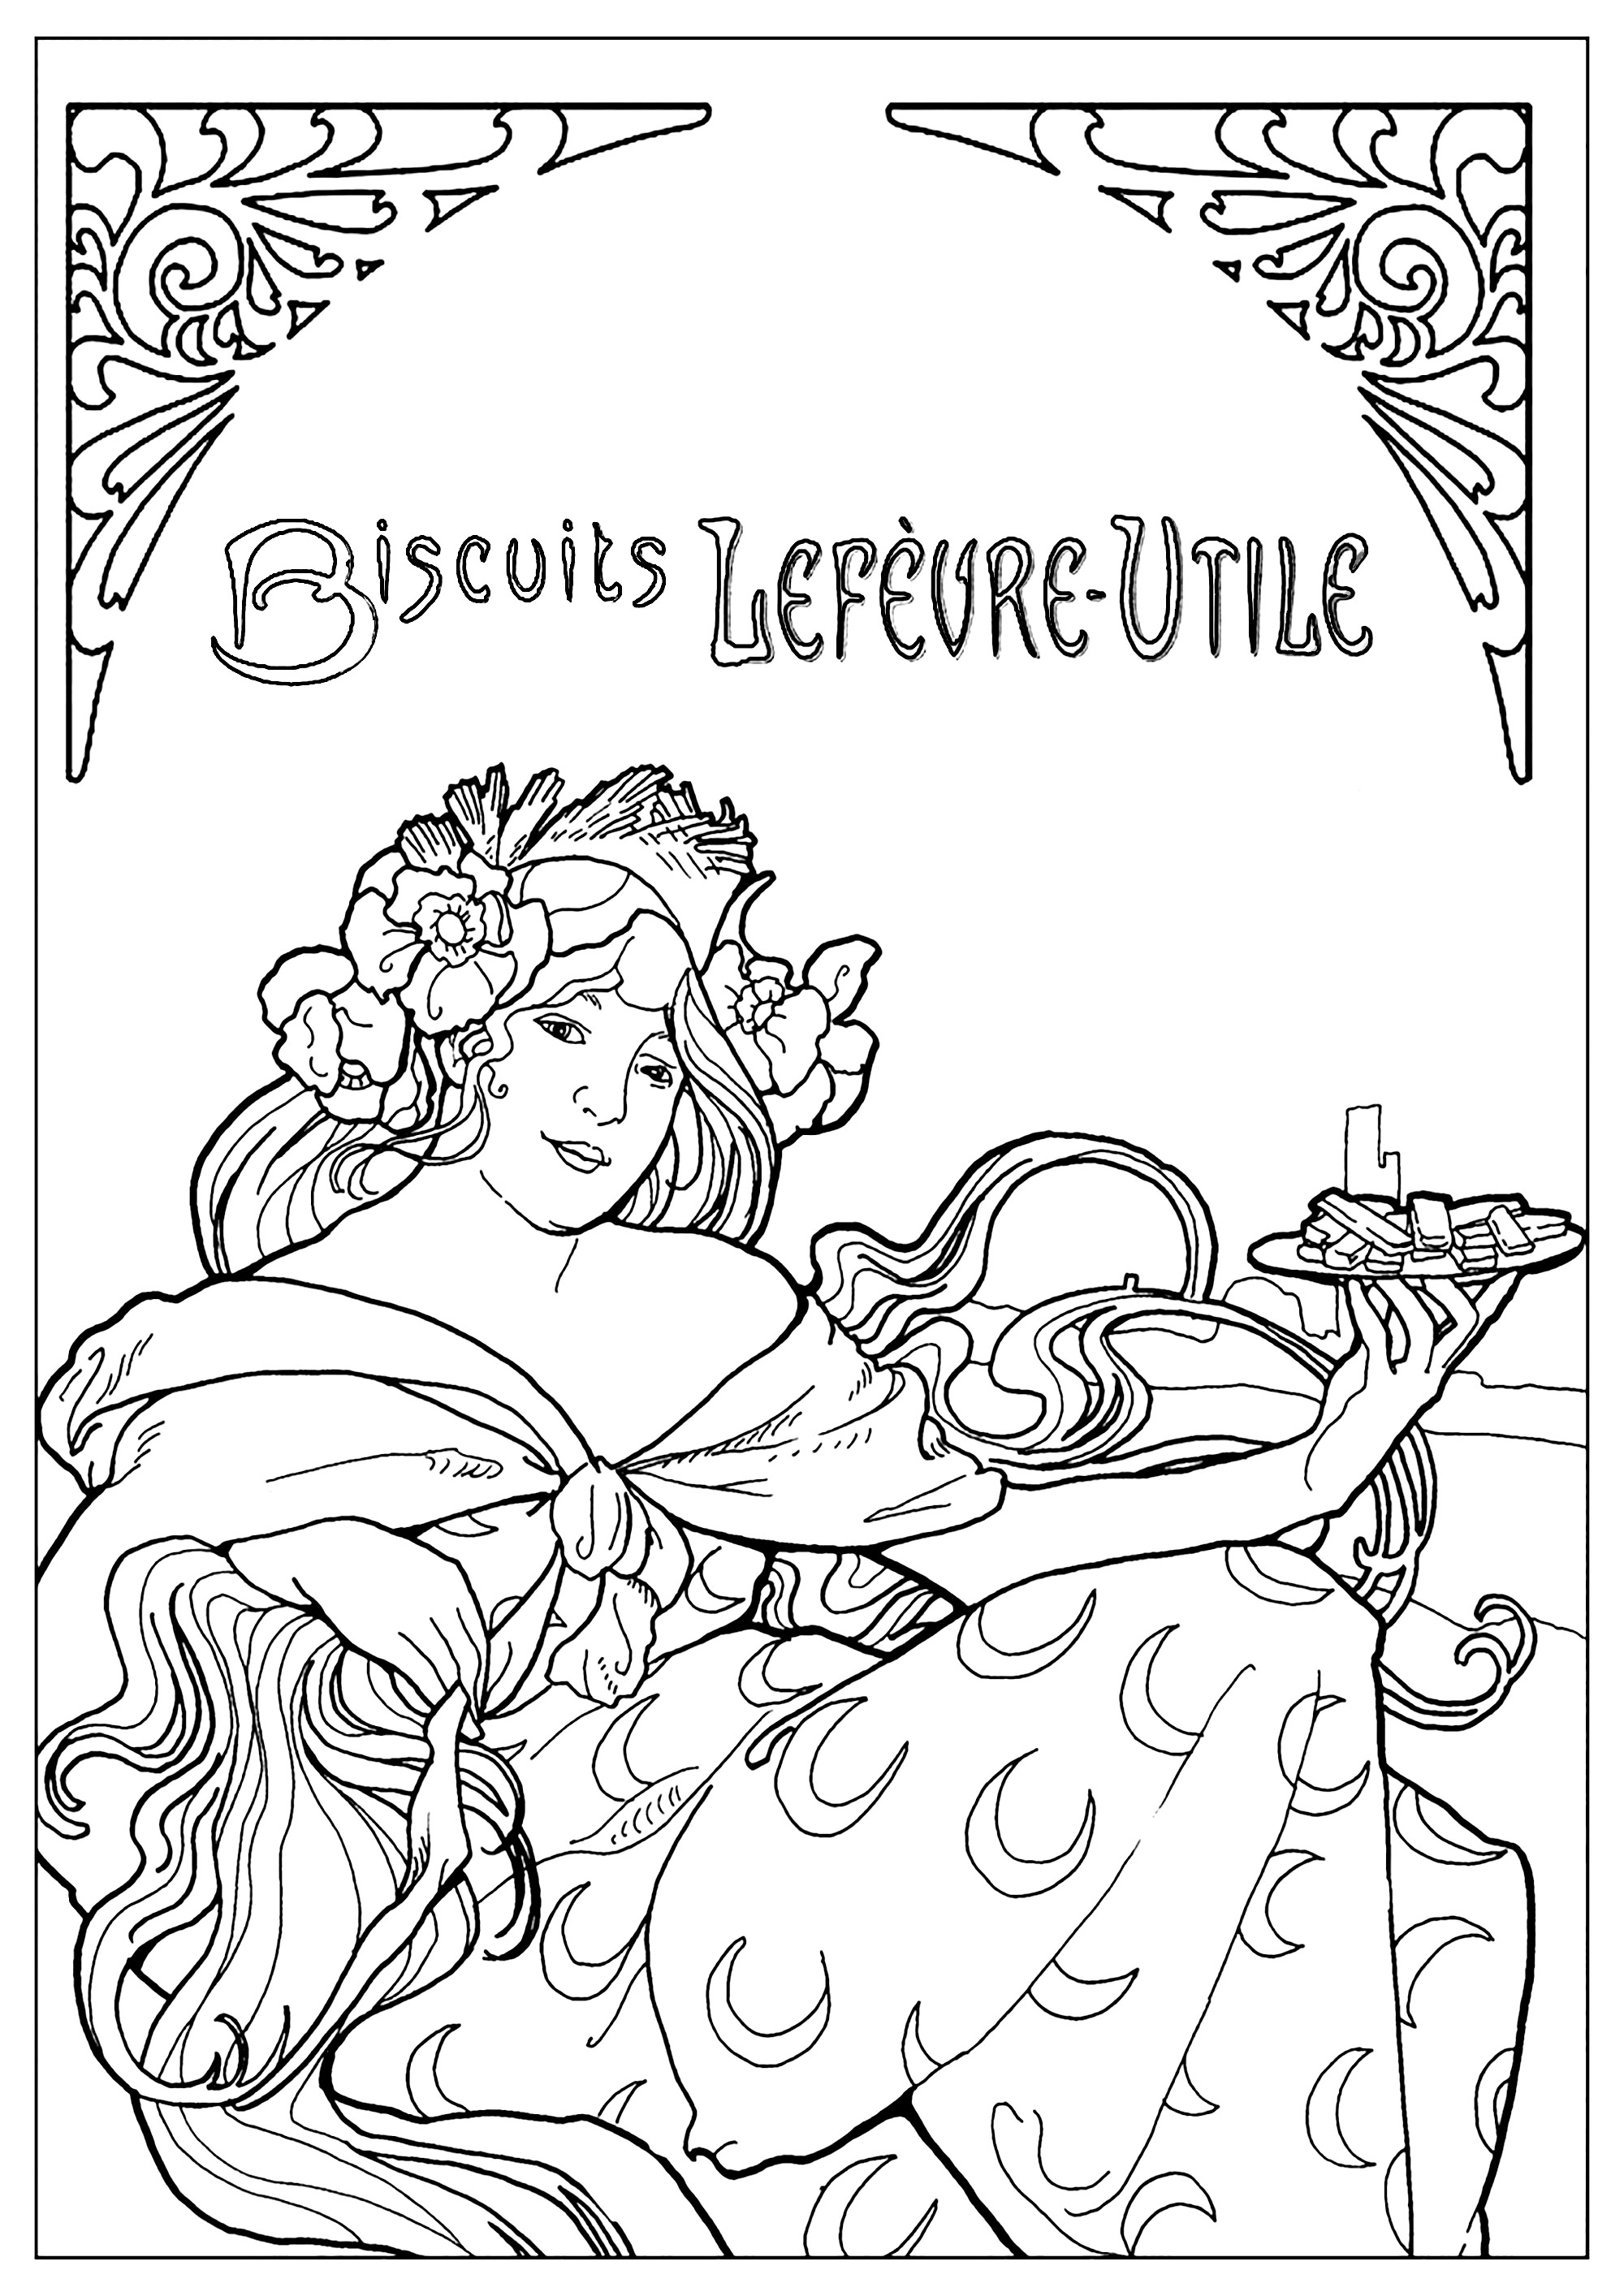 Coloreado creado a partir de un cartel publicitario de Biscuits Lefèvre-Utile (L. U) de Alfons Mucha (1896)Este cartel es típico del estilo Art Nouveau. Una copia de época puede verse en el Museo Carnavalet (musée de l